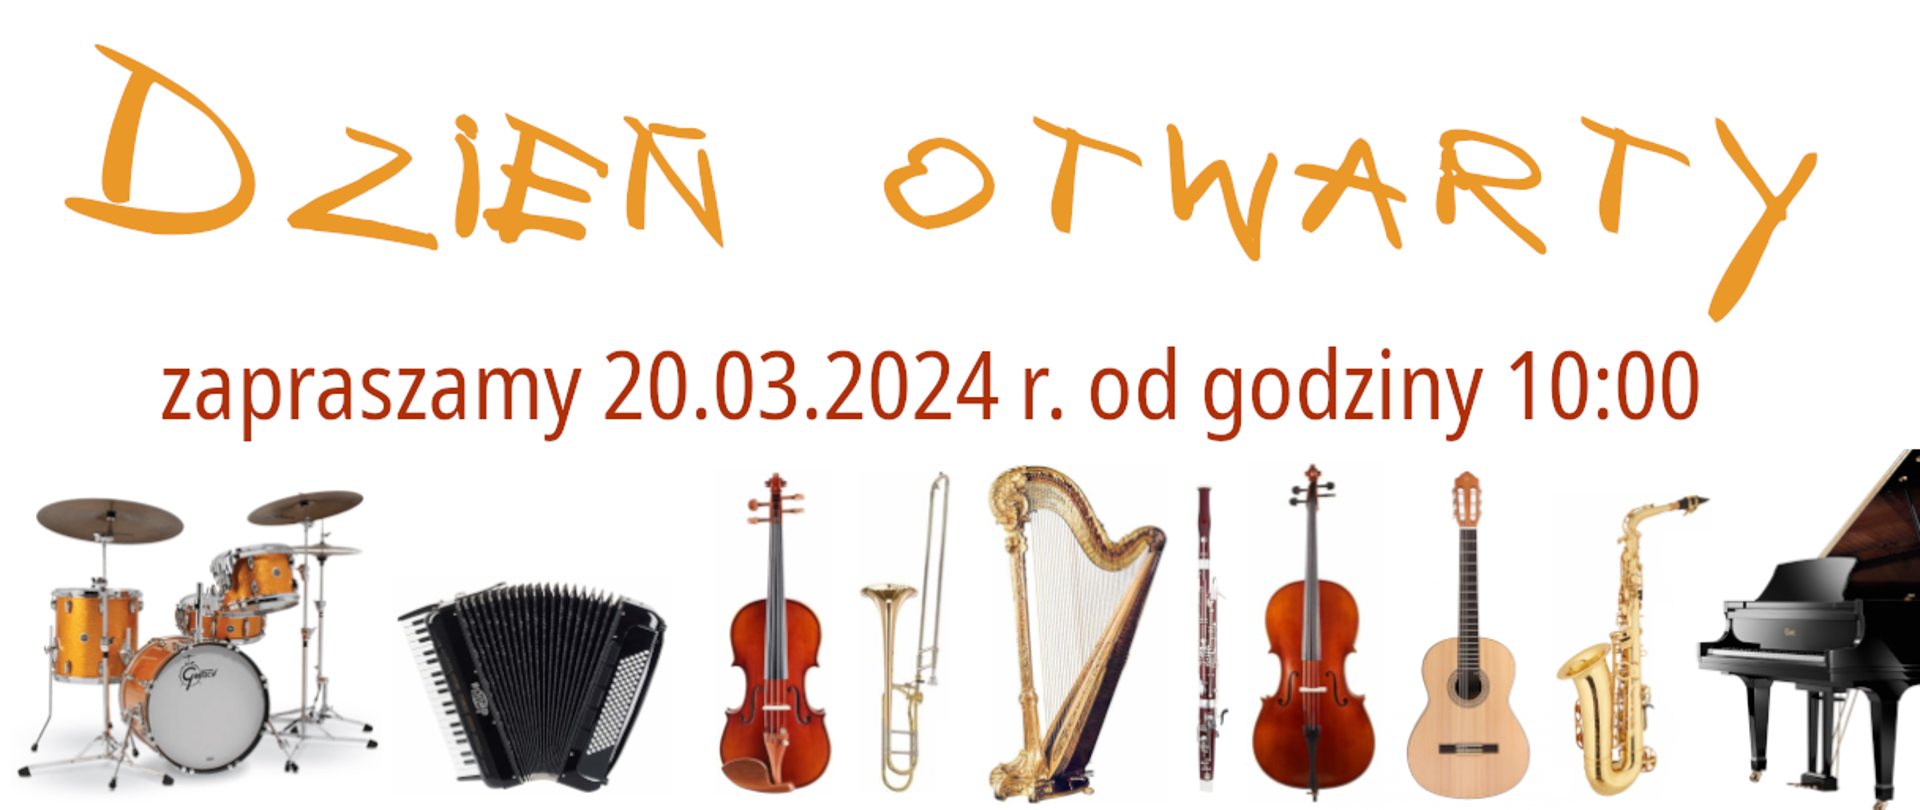 Grafika przedstawiająca na jasnym tle zdjęcia instrumentów oraz napis Dzień Otwarty Szkoły zapraszamy 20.03.2024 od godz. 10.00